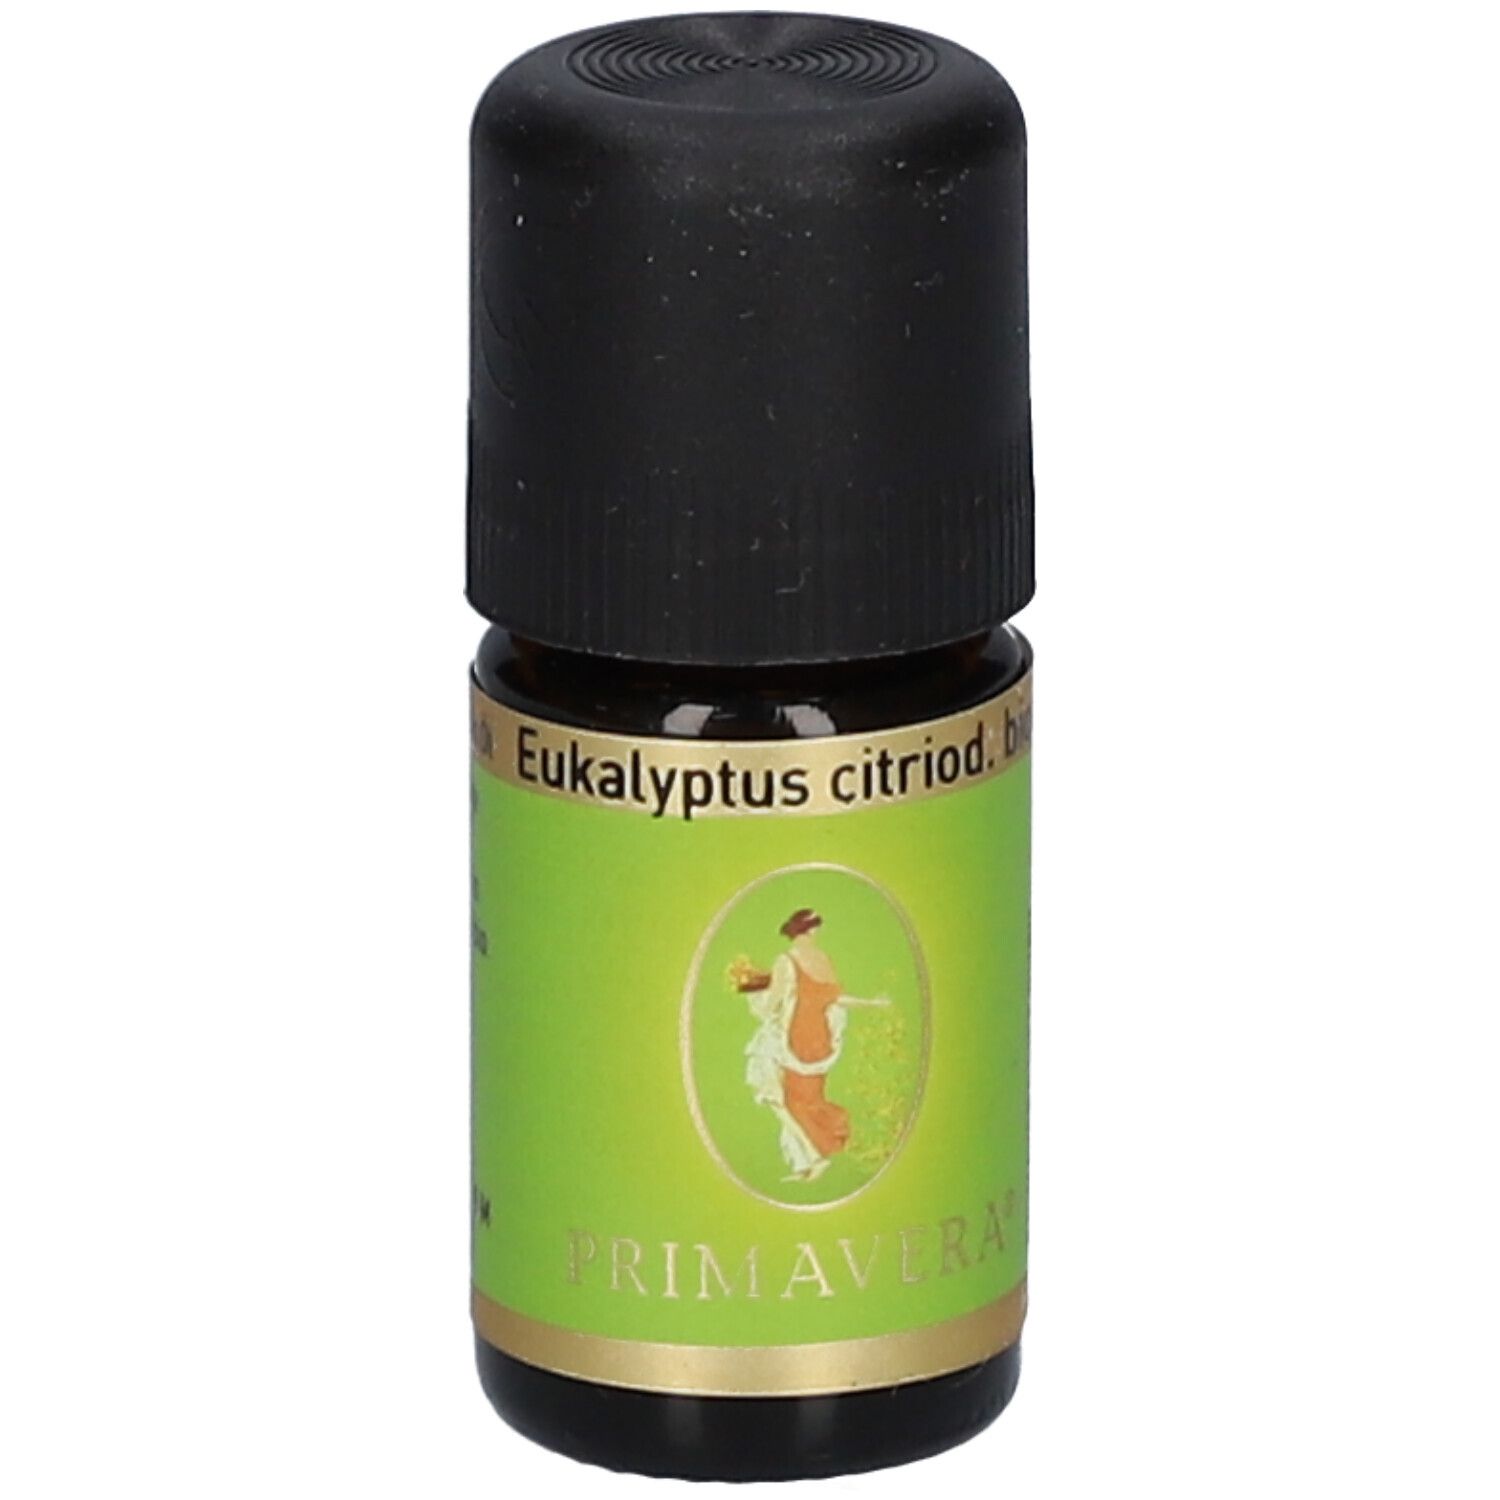 PRIMAVERA® Eukalyptus citriodora BIO